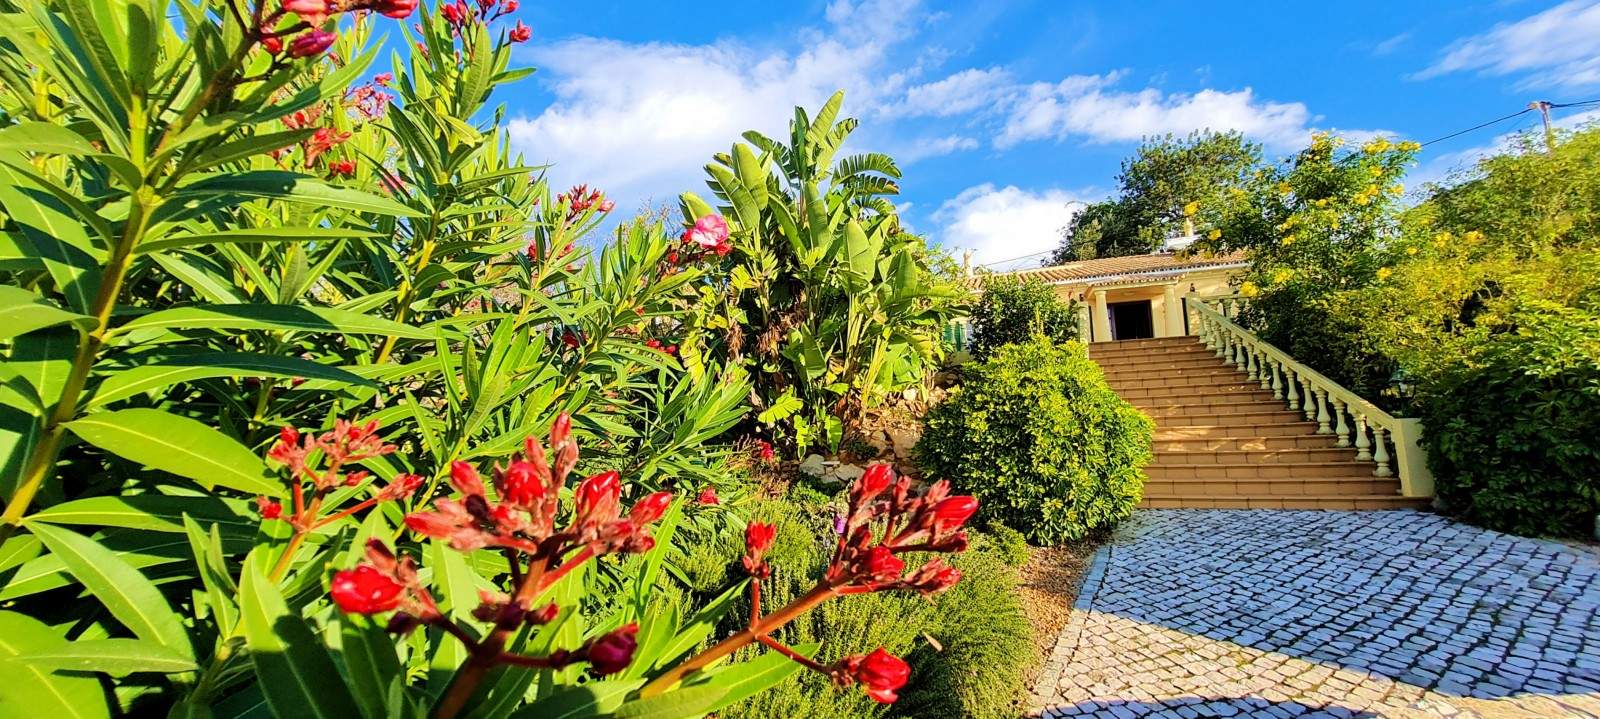 Moradia T2 com jardim, para venda, em São Brás de Alportel, Algarve_203388